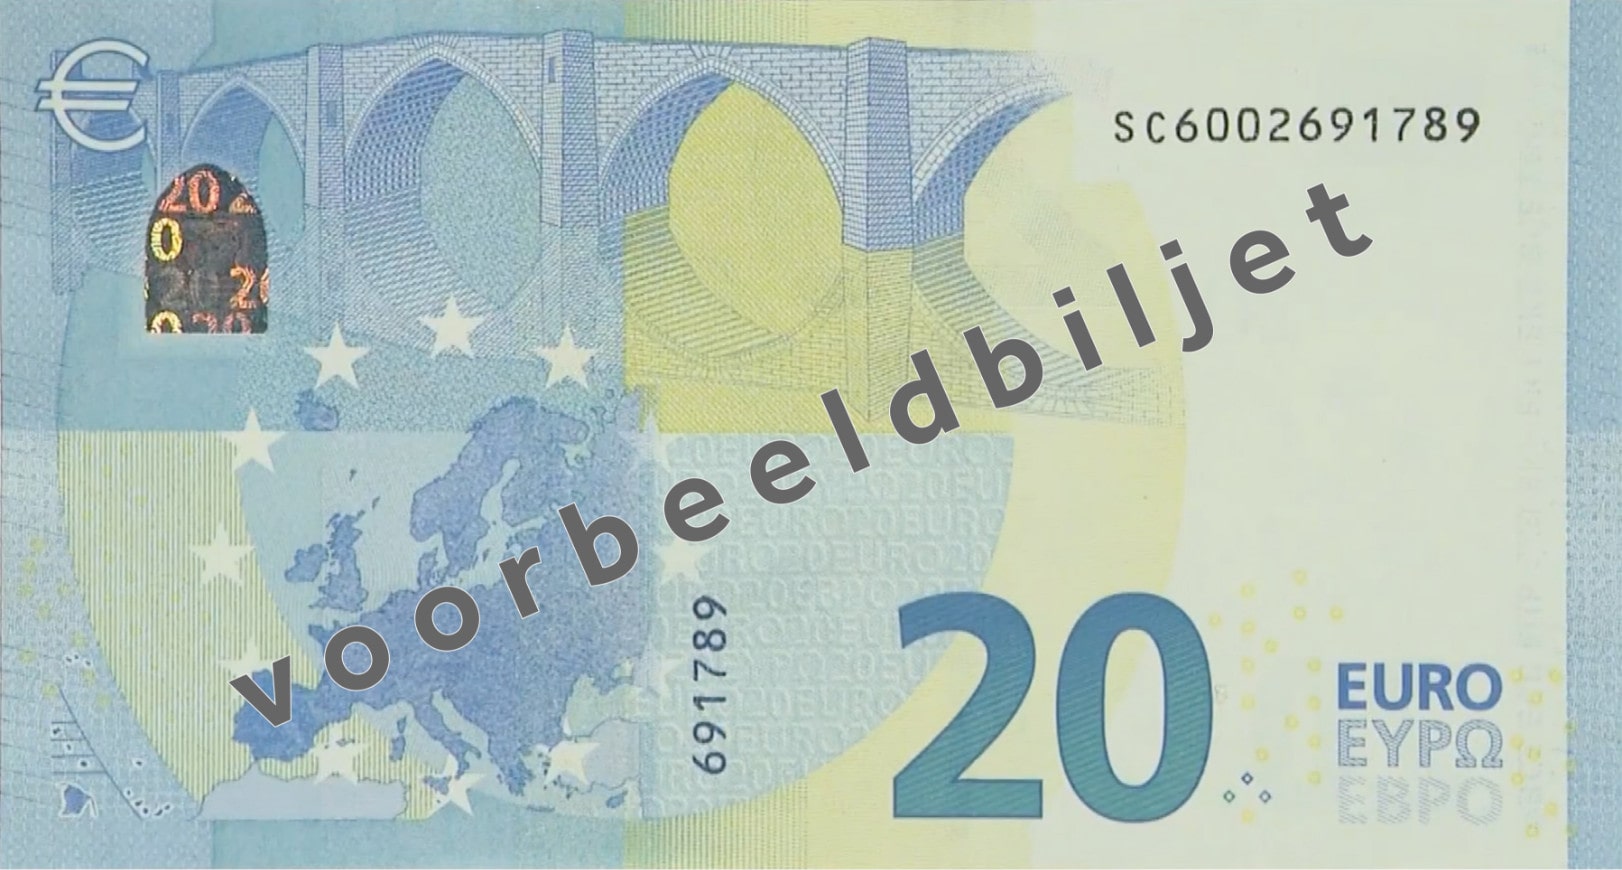 Twintig euro biljet (€20) achterkant